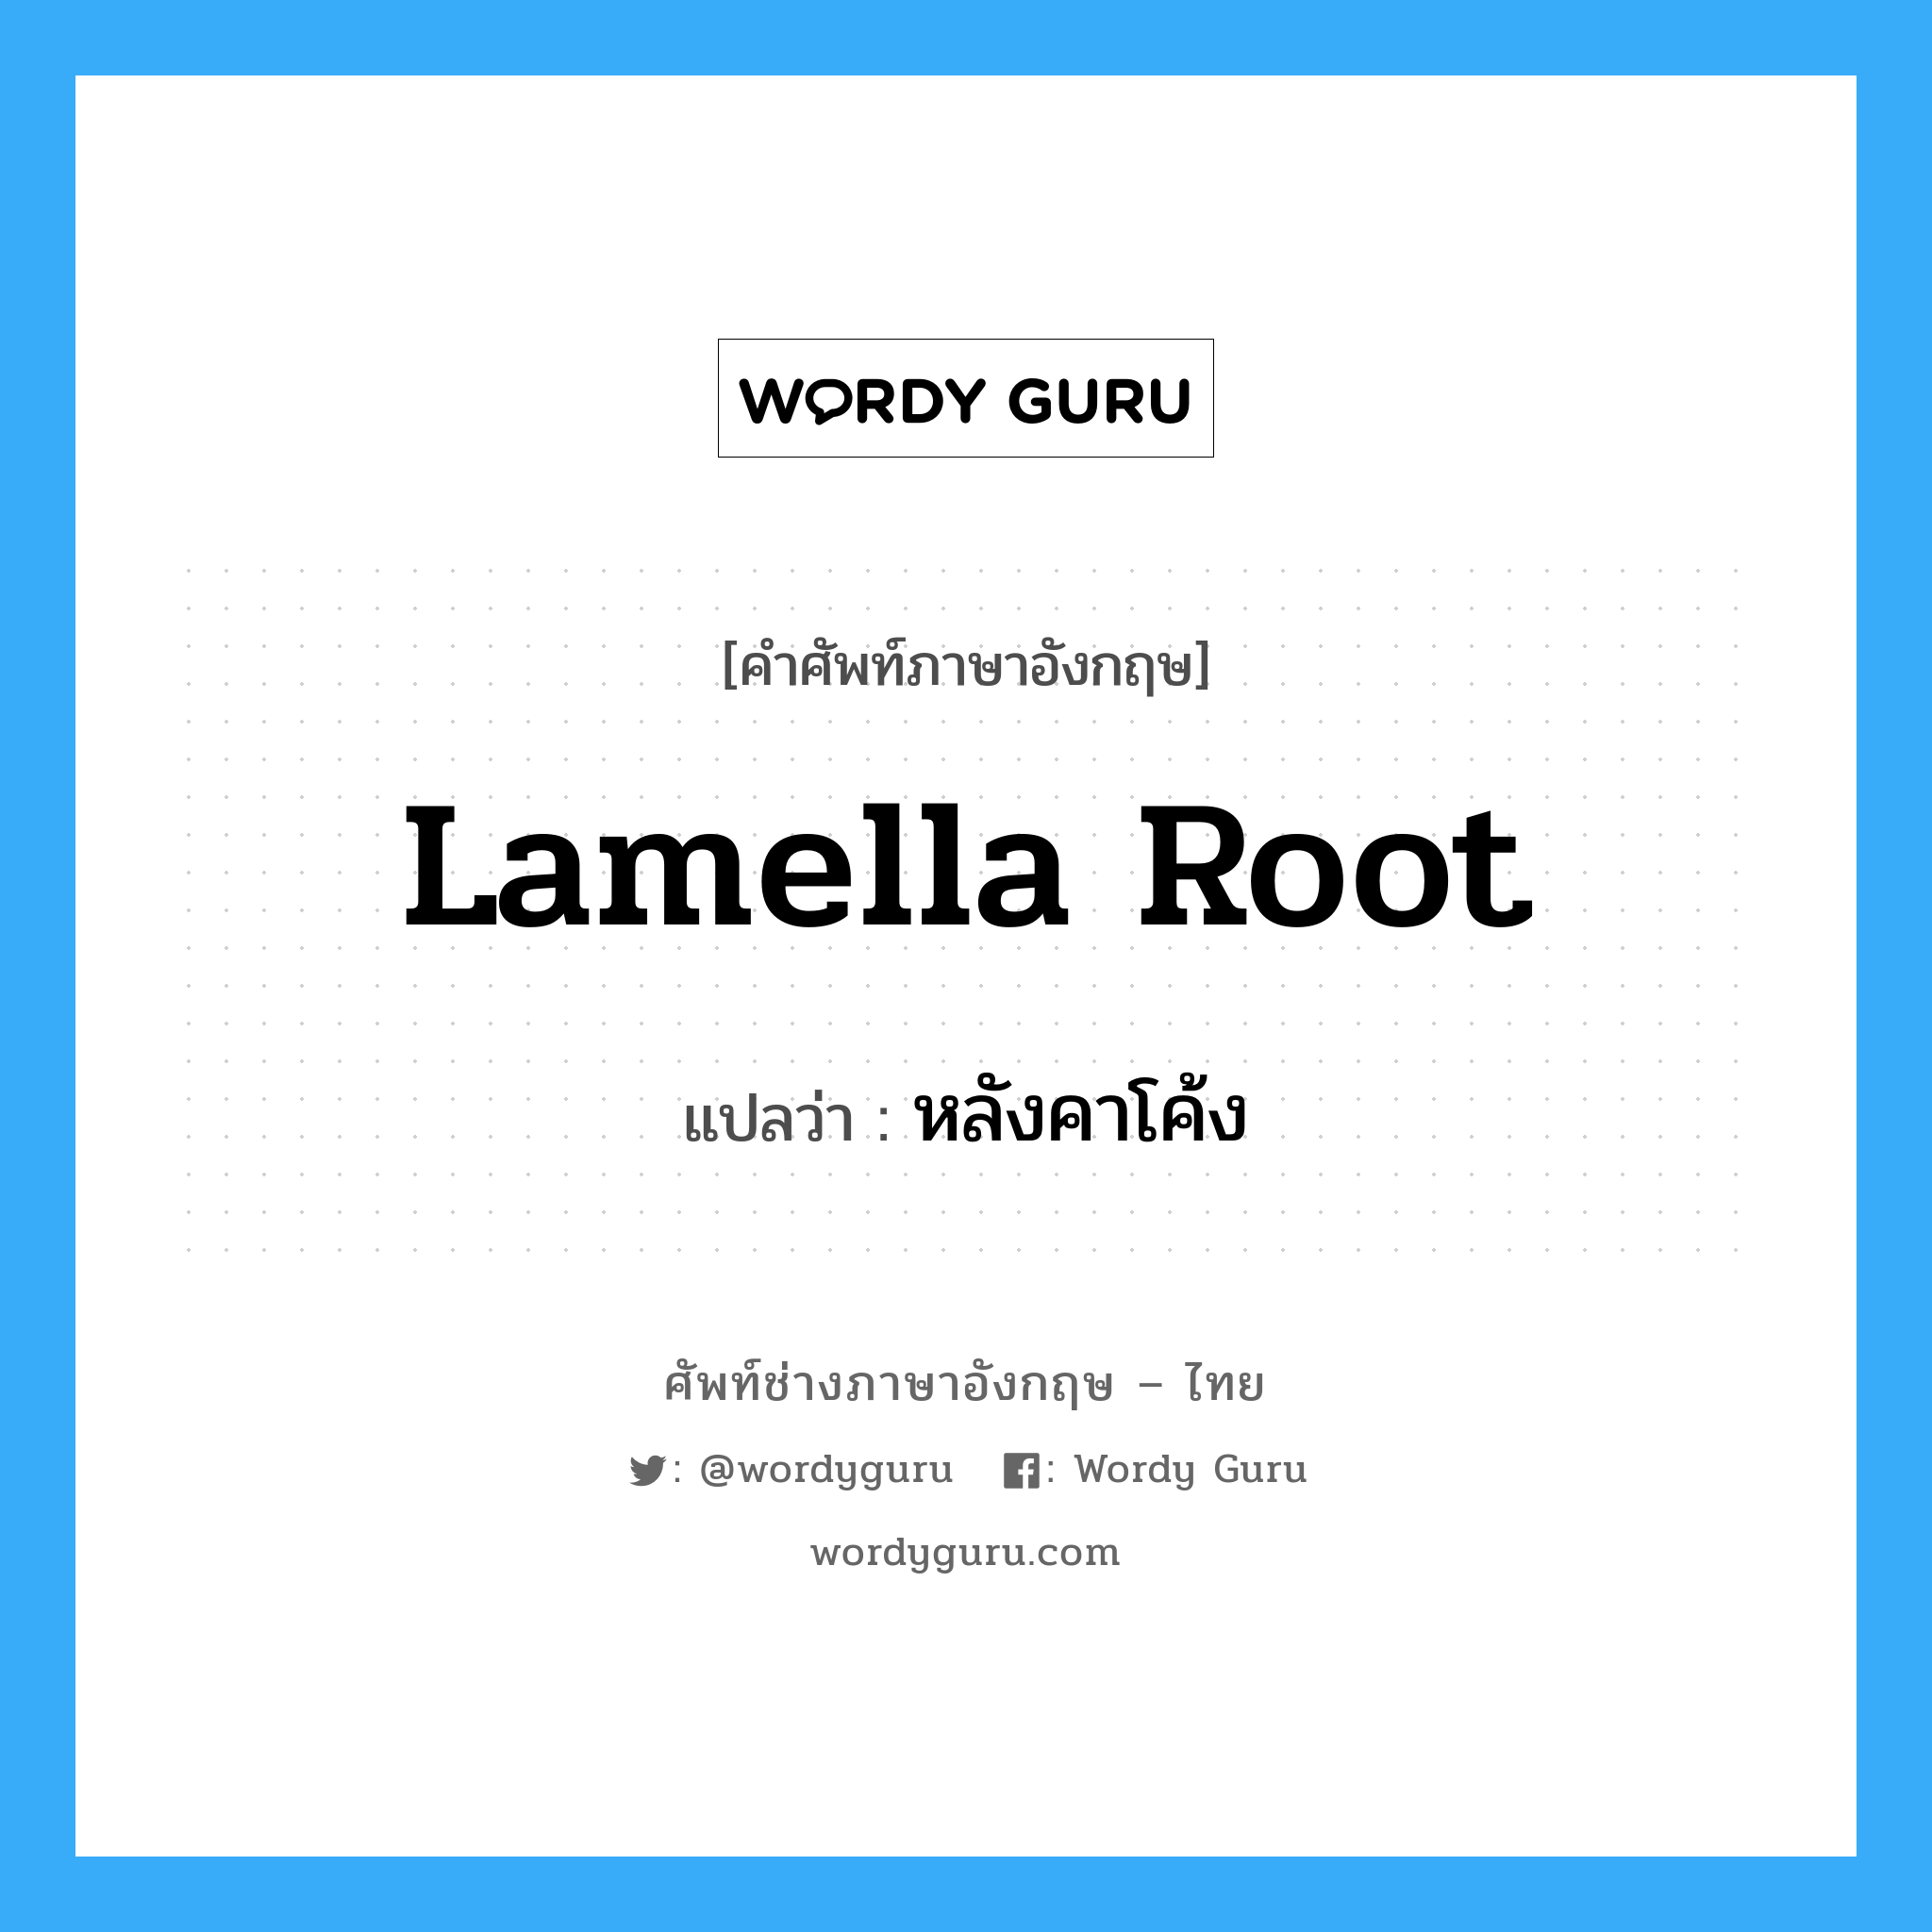 lamella root แปลว่า?, คำศัพท์ช่างภาษาอังกฤษ - ไทย lamella root คำศัพท์ภาษาอังกฤษ lamella root แปลว่า หลังคาโค้ง